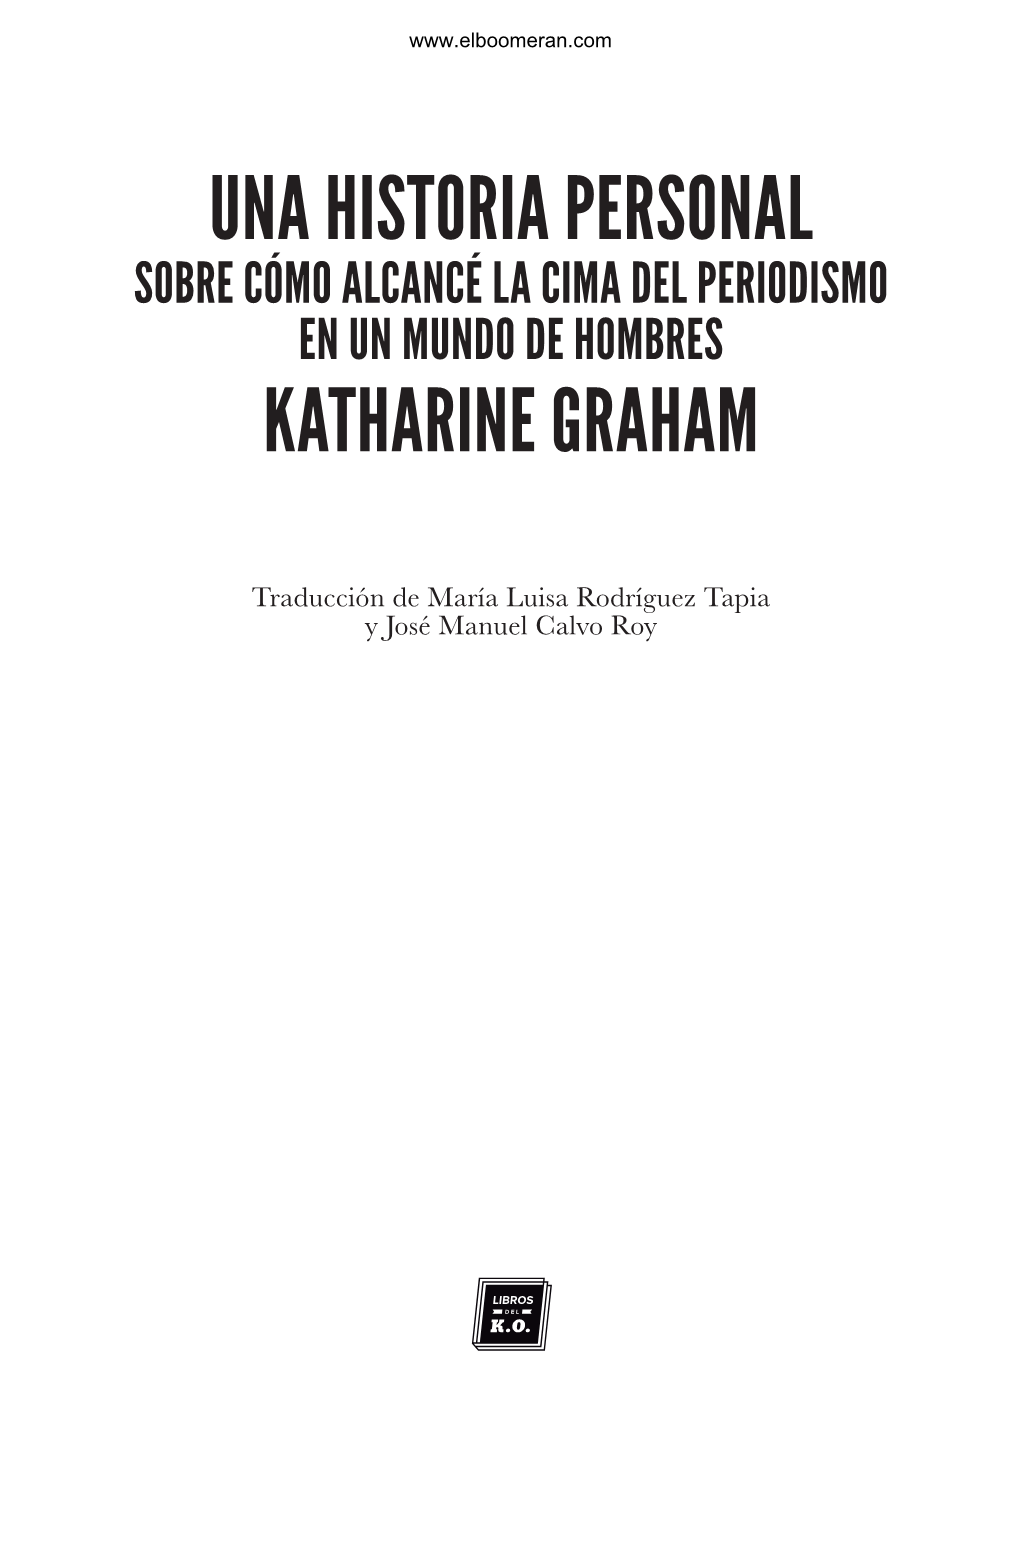 Una Historia Personal Katharine Graham